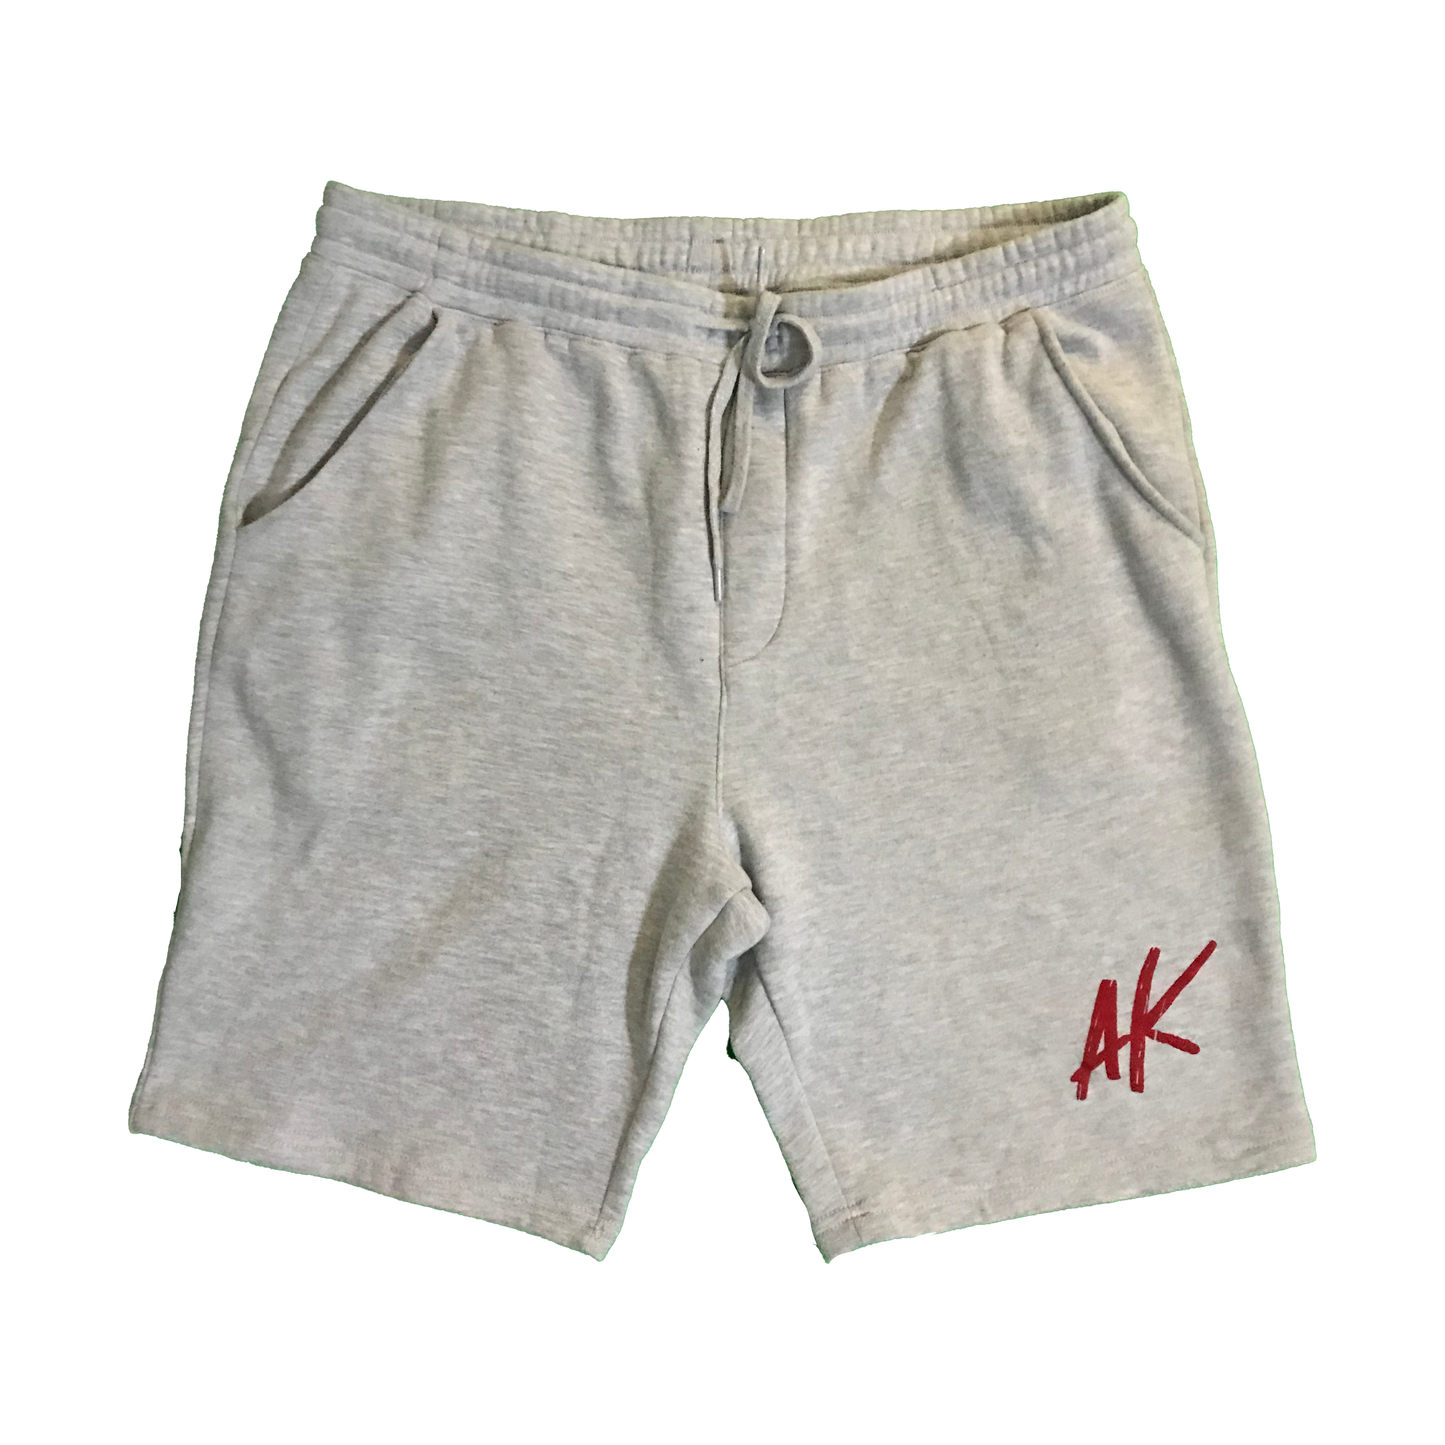 AK Shorts - Gray/Red